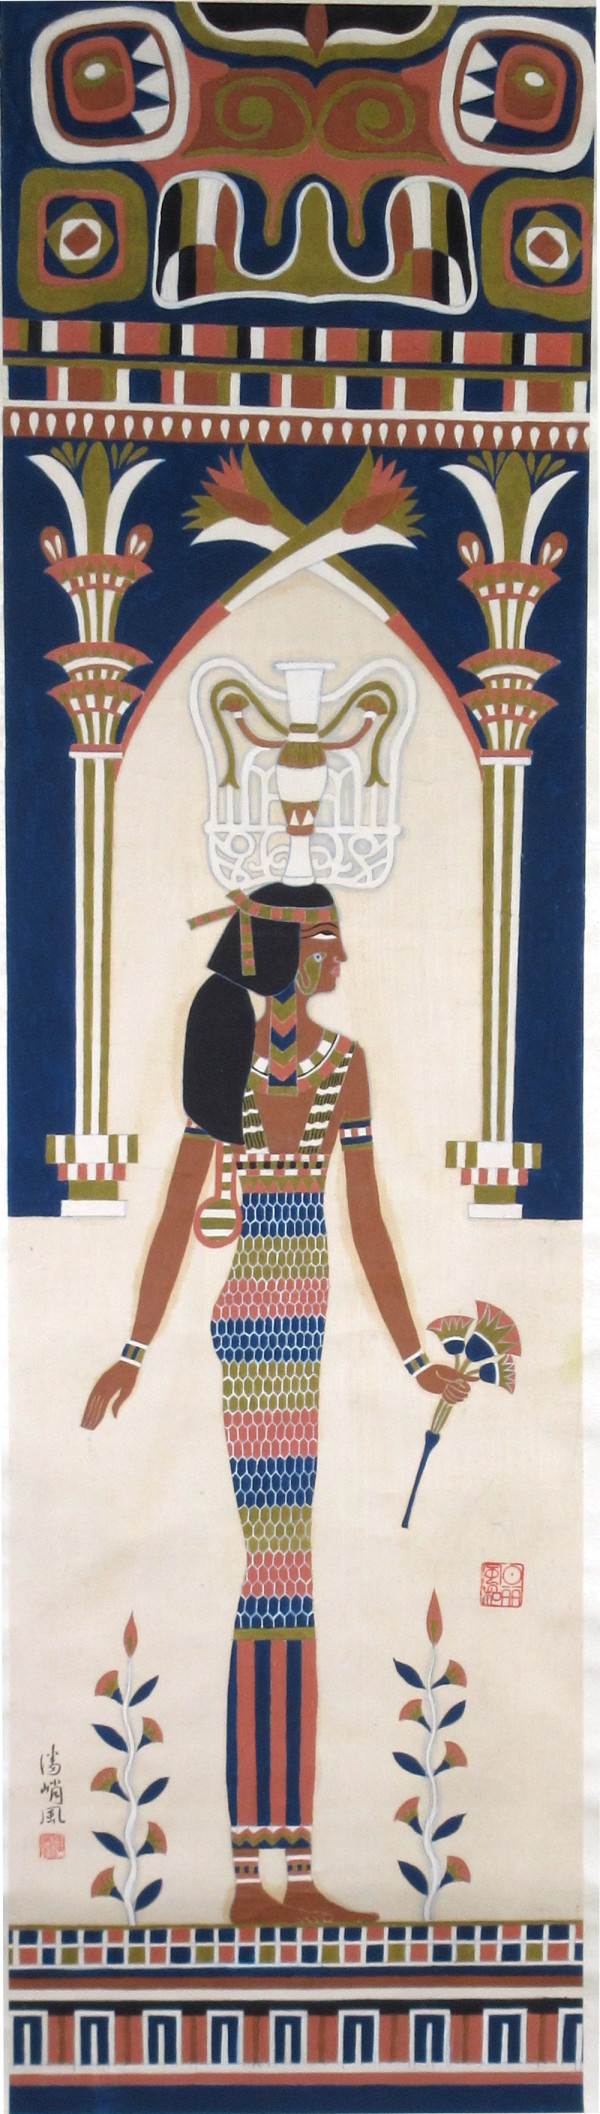 Egyptian Fresco #2 by Chiu Fung Poon